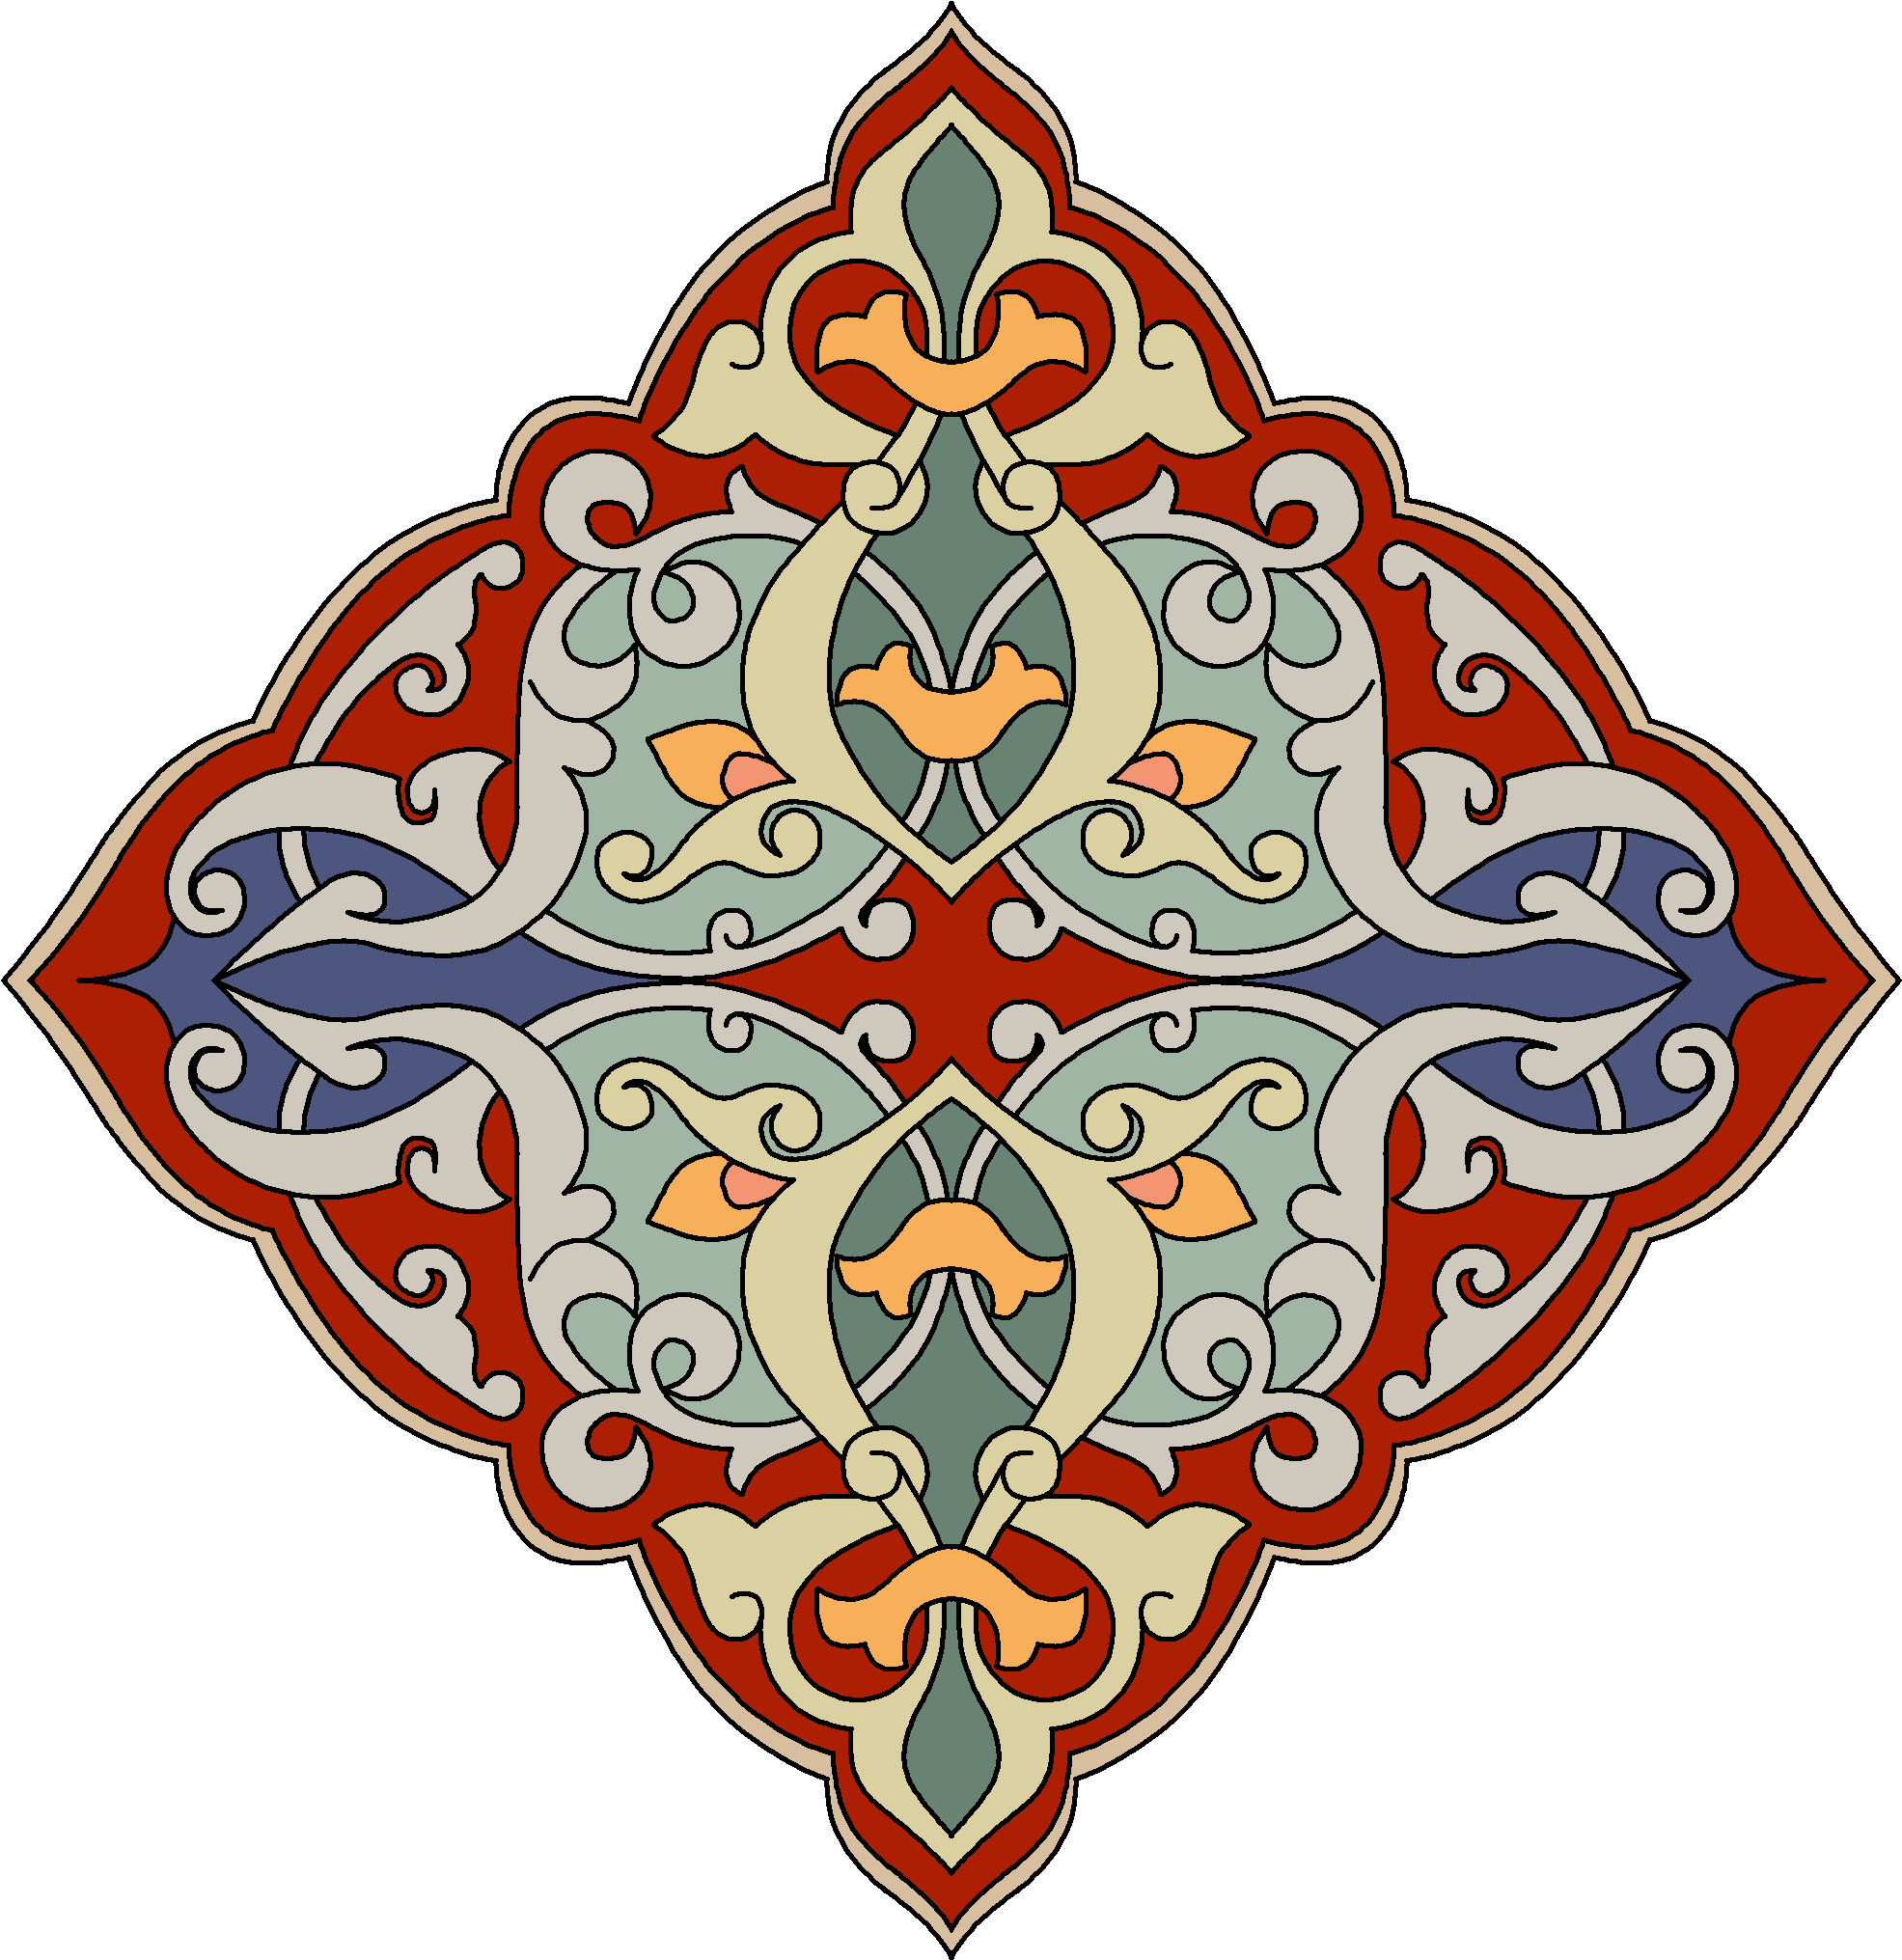 Узбекские схемы. Арабский Багдади орнамент. Исламский орнамент Арабеска. Узбекистан нац орнамент вектор. Национальный орнамент Таджикистана вектор.